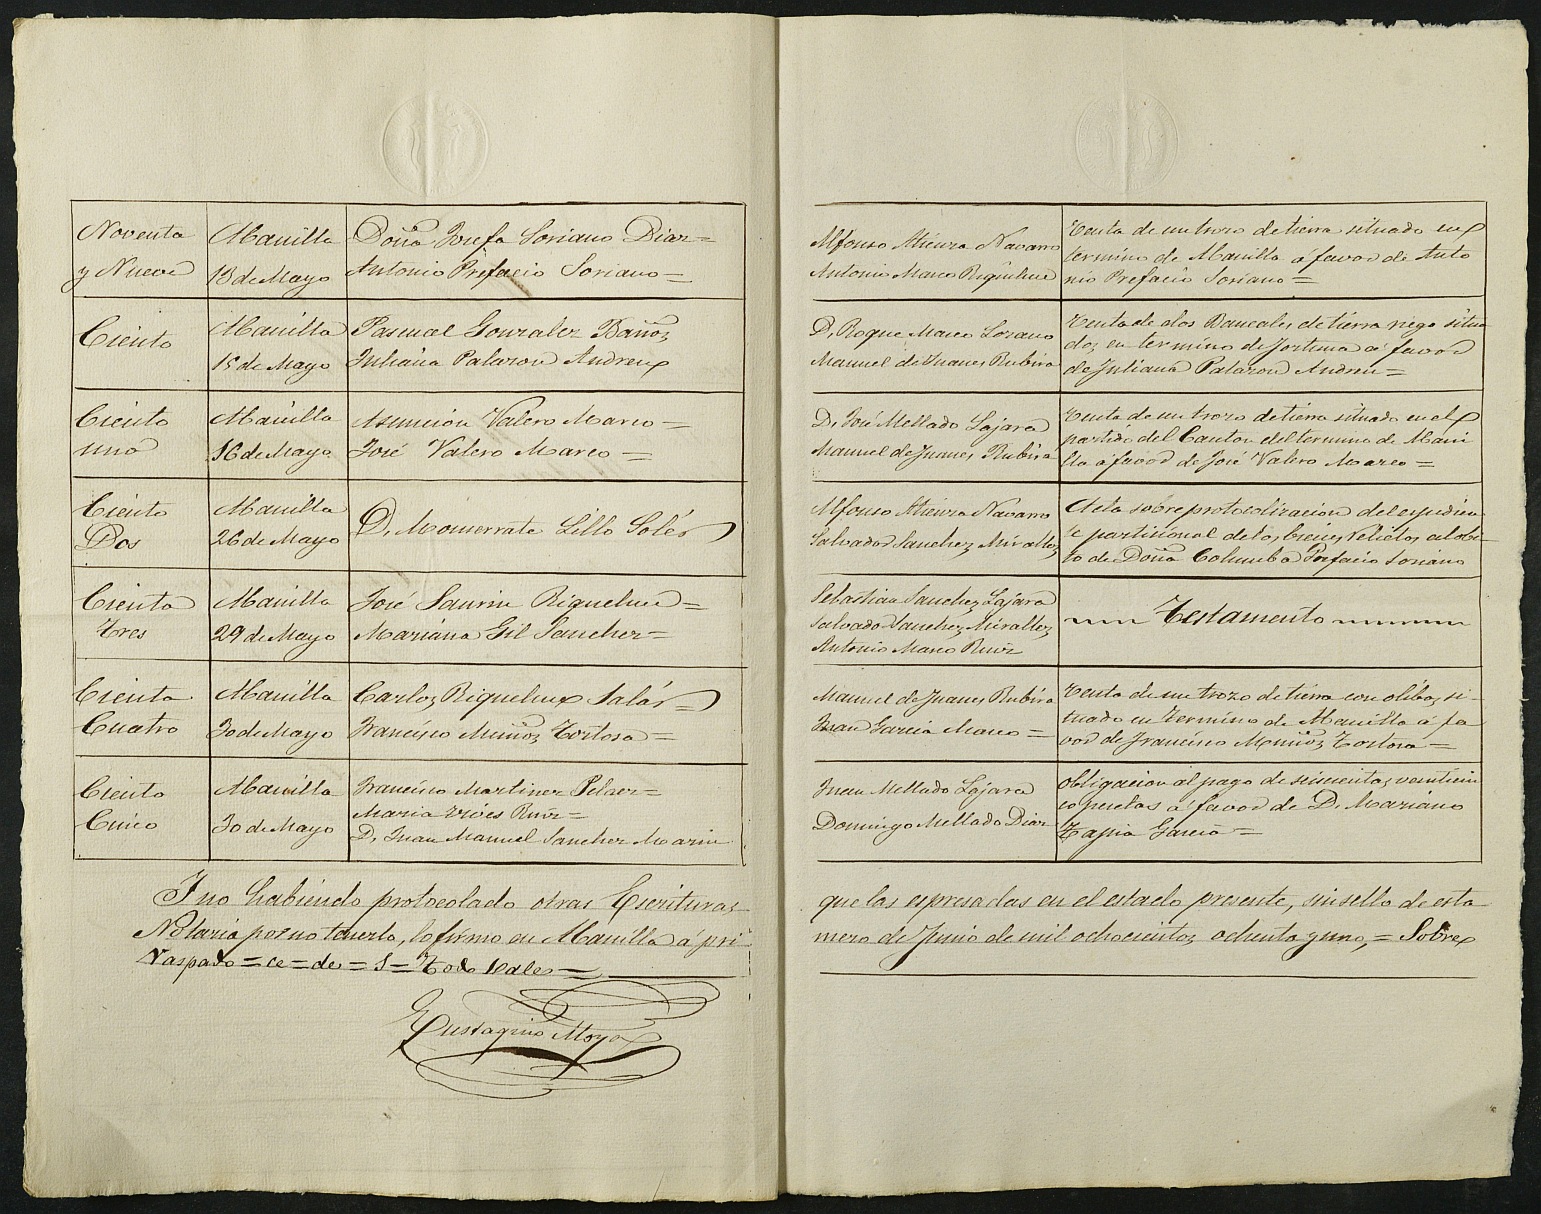 Índices del notario de Abanilla  Eustaquio Moya Torrecilla del año 1881, mayo.